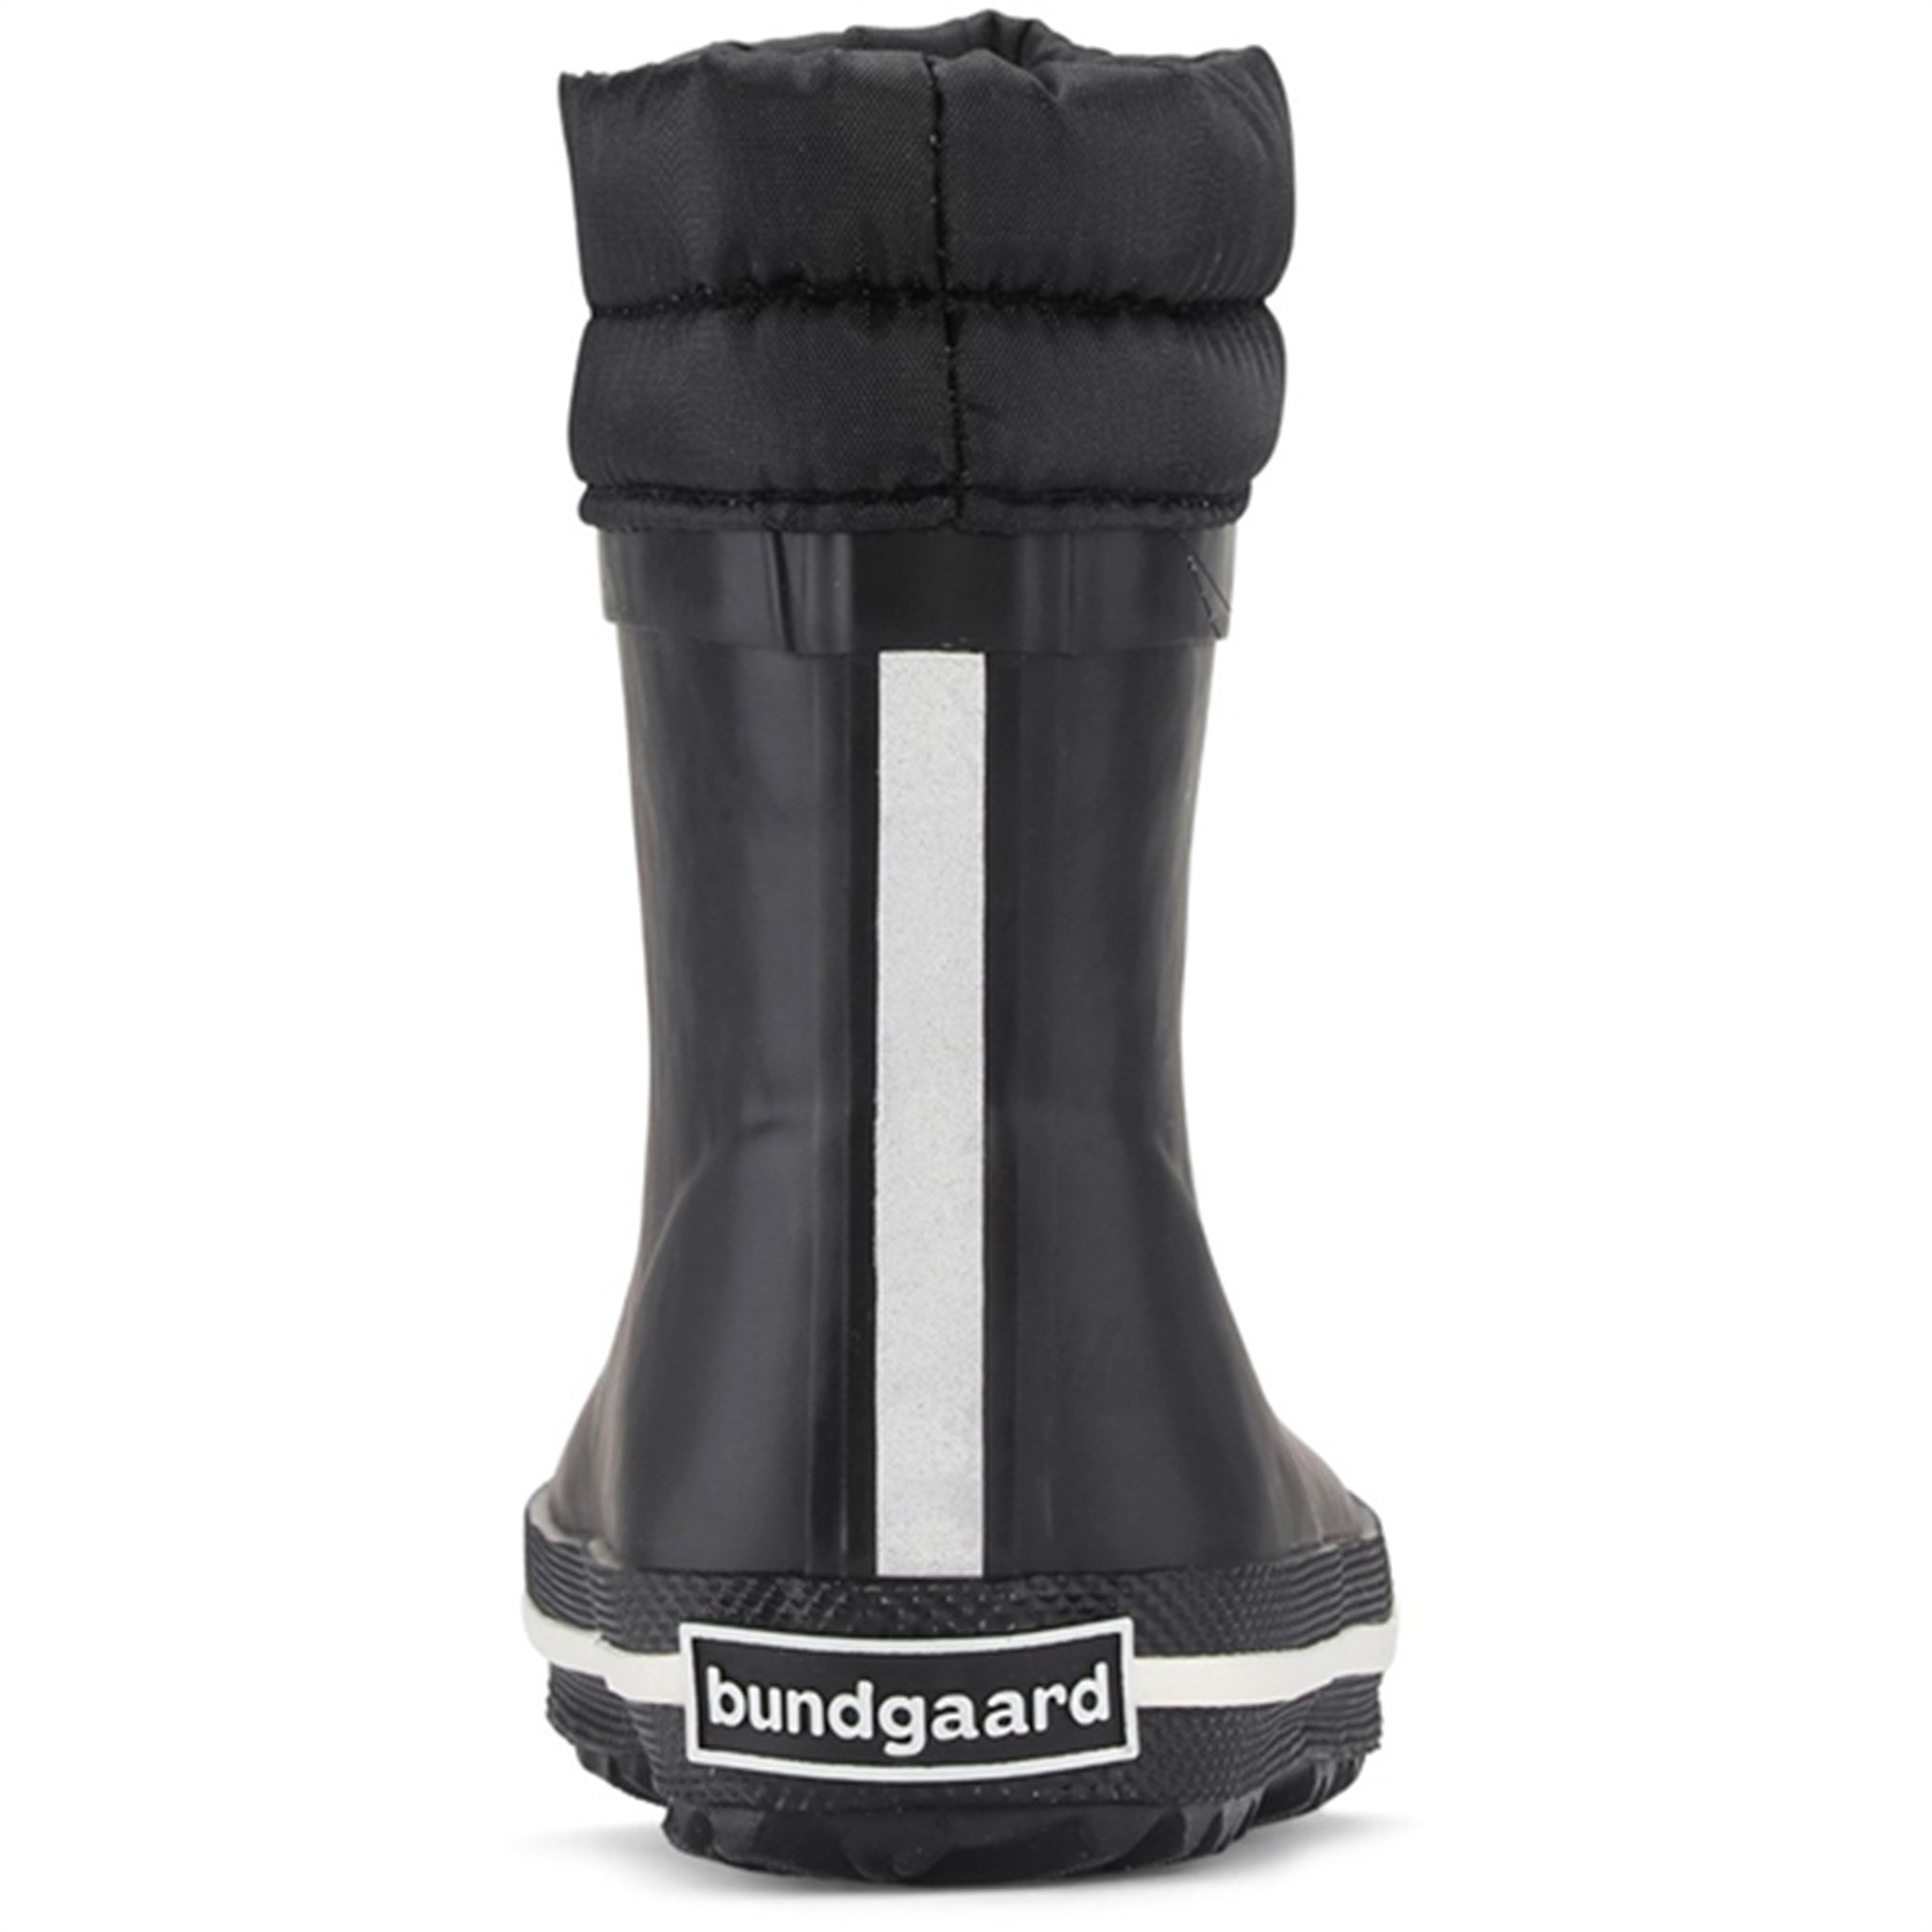 Bundgaard Cirro Low Warm Rubber Boots Black 3